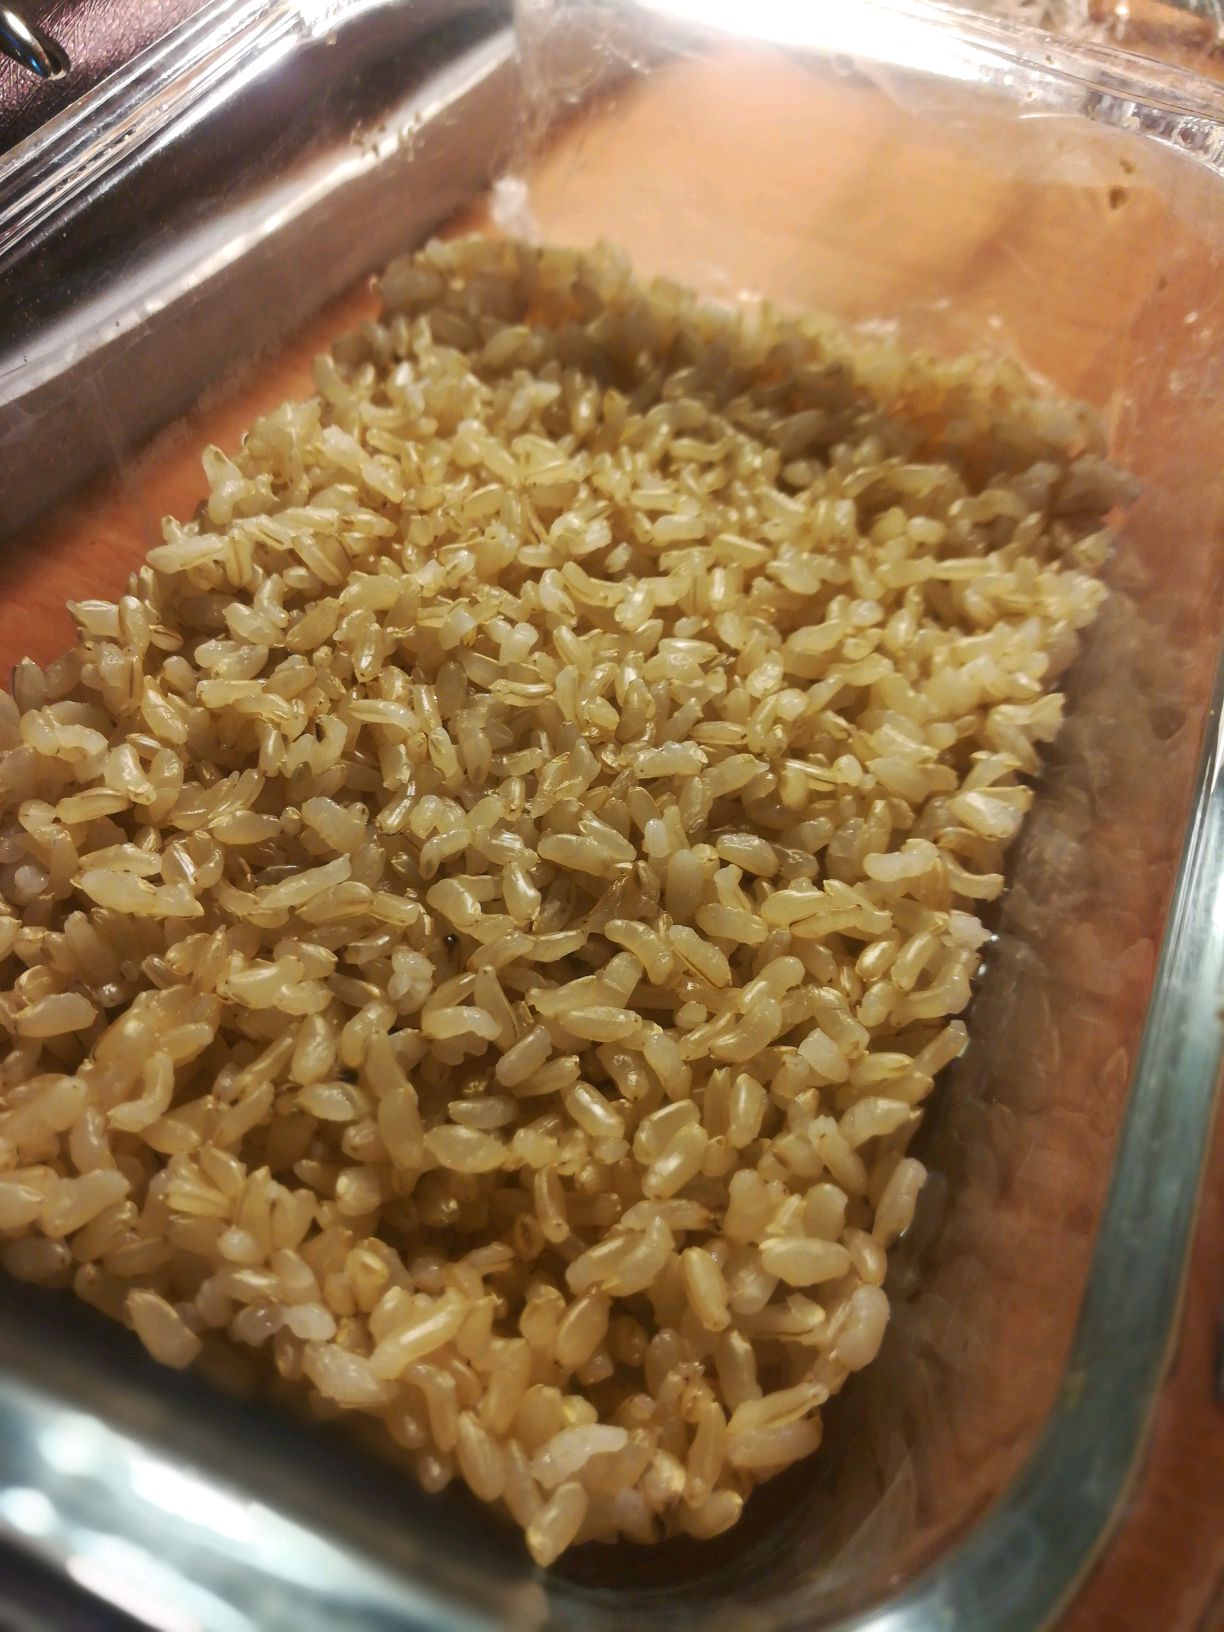 【農業日文2】日本微波盒裝白米飯的祕密 - 農傳媒